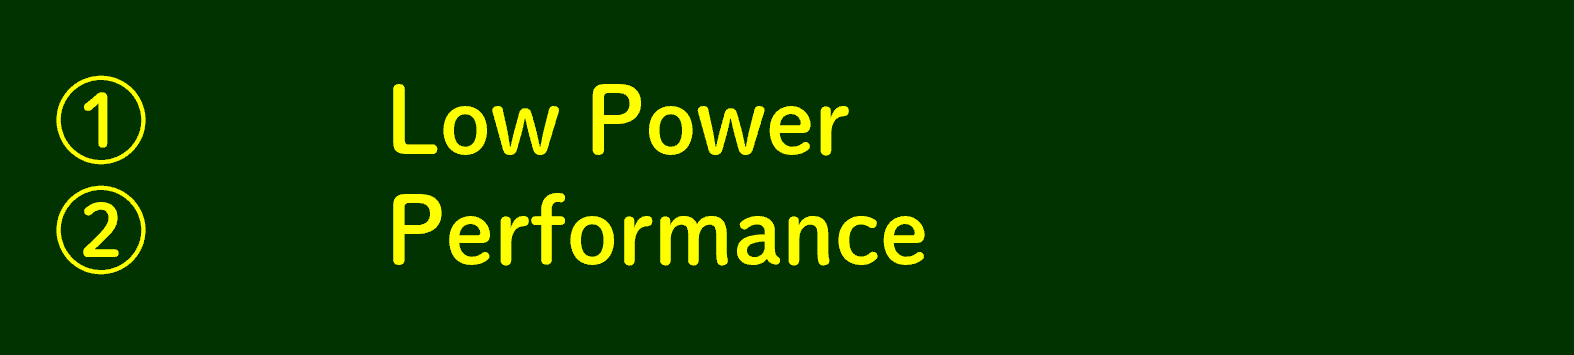 LPDDR4の特徴 ①Low Powerと②Performance